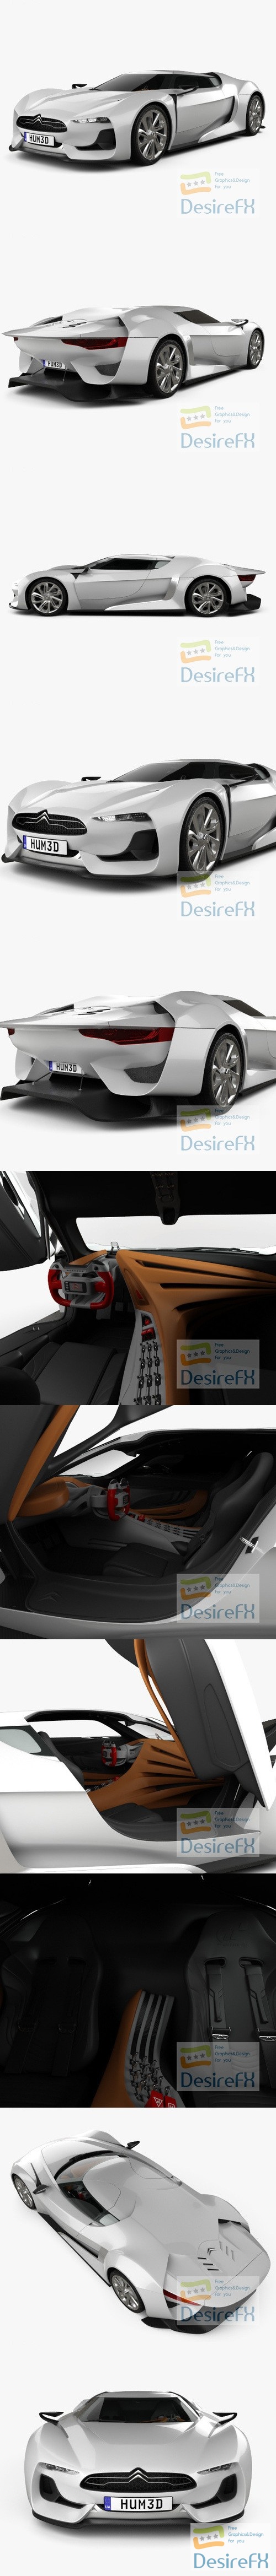 Citroen GT with HQ interior 2008 3D Model